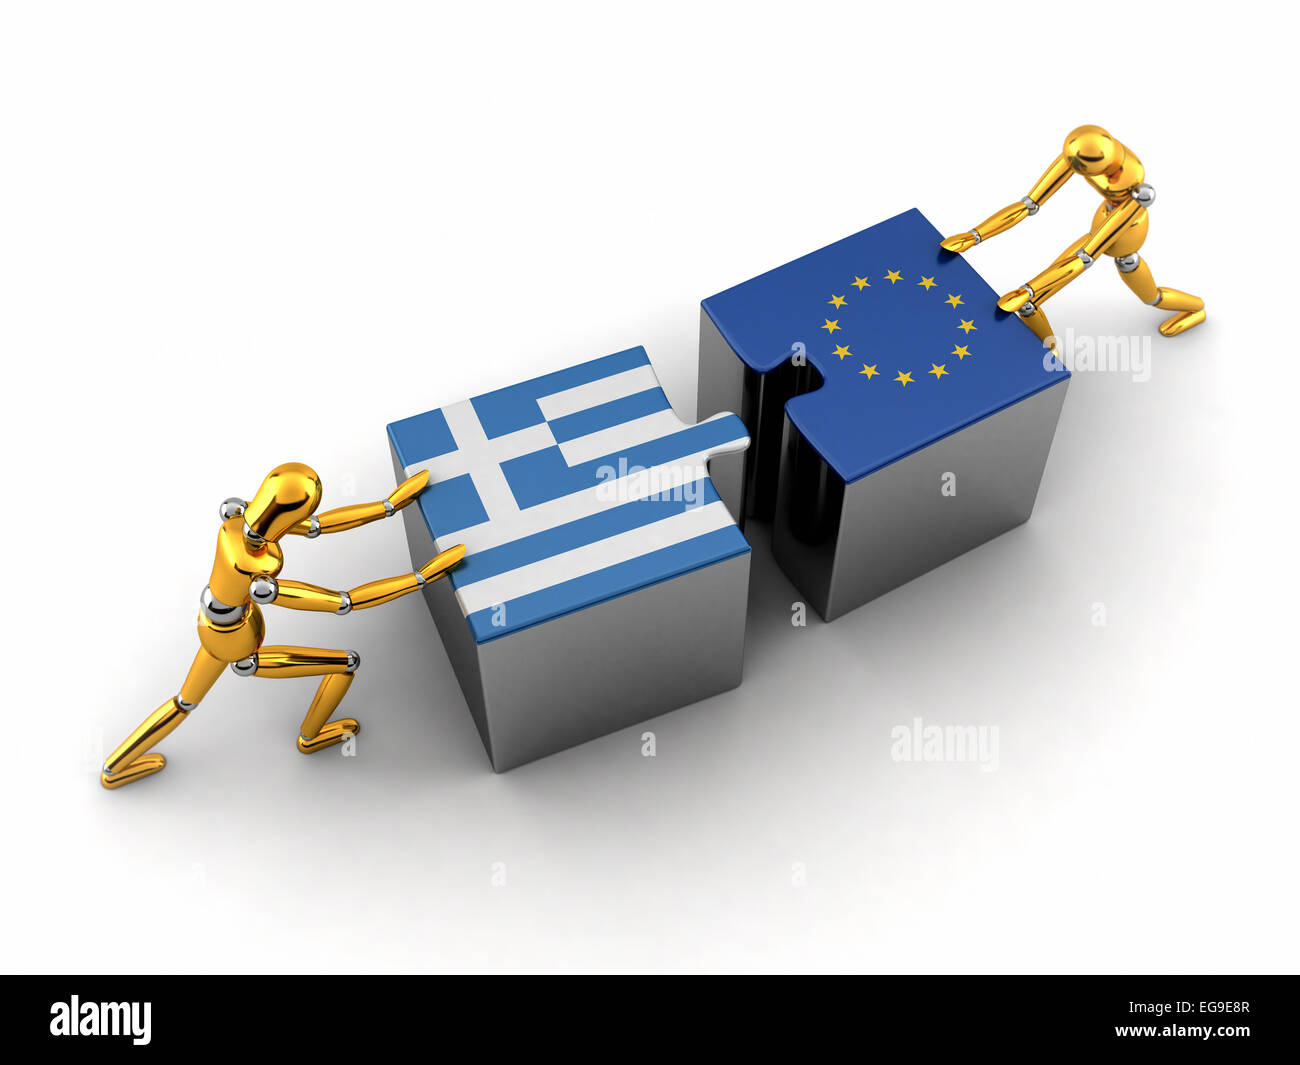 Politische oder finanzielle Konzept von Griechenland zu kämpfen und eine Lösung mit der Europäischen Union zu finden. Stockfoto